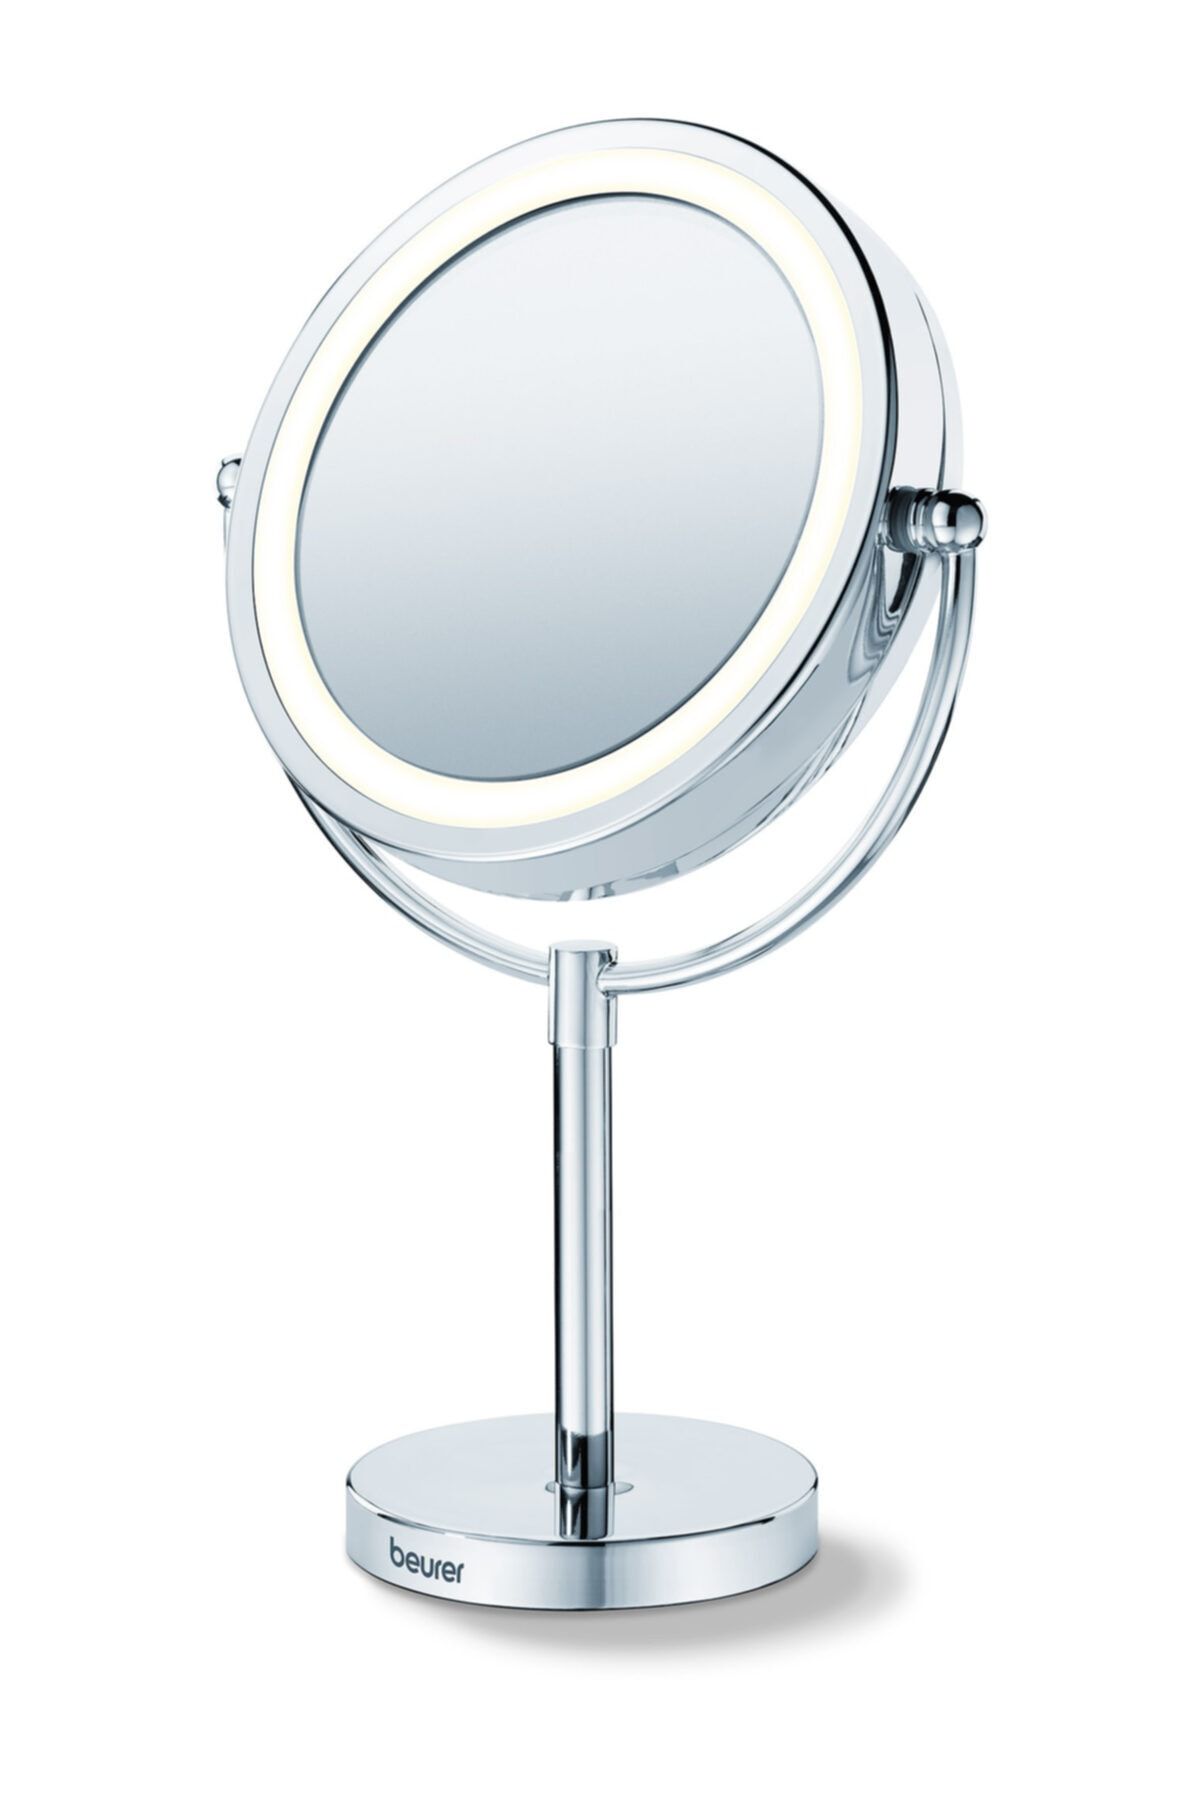 Beurer Bs 69 Işıklı Makyaj Aynası